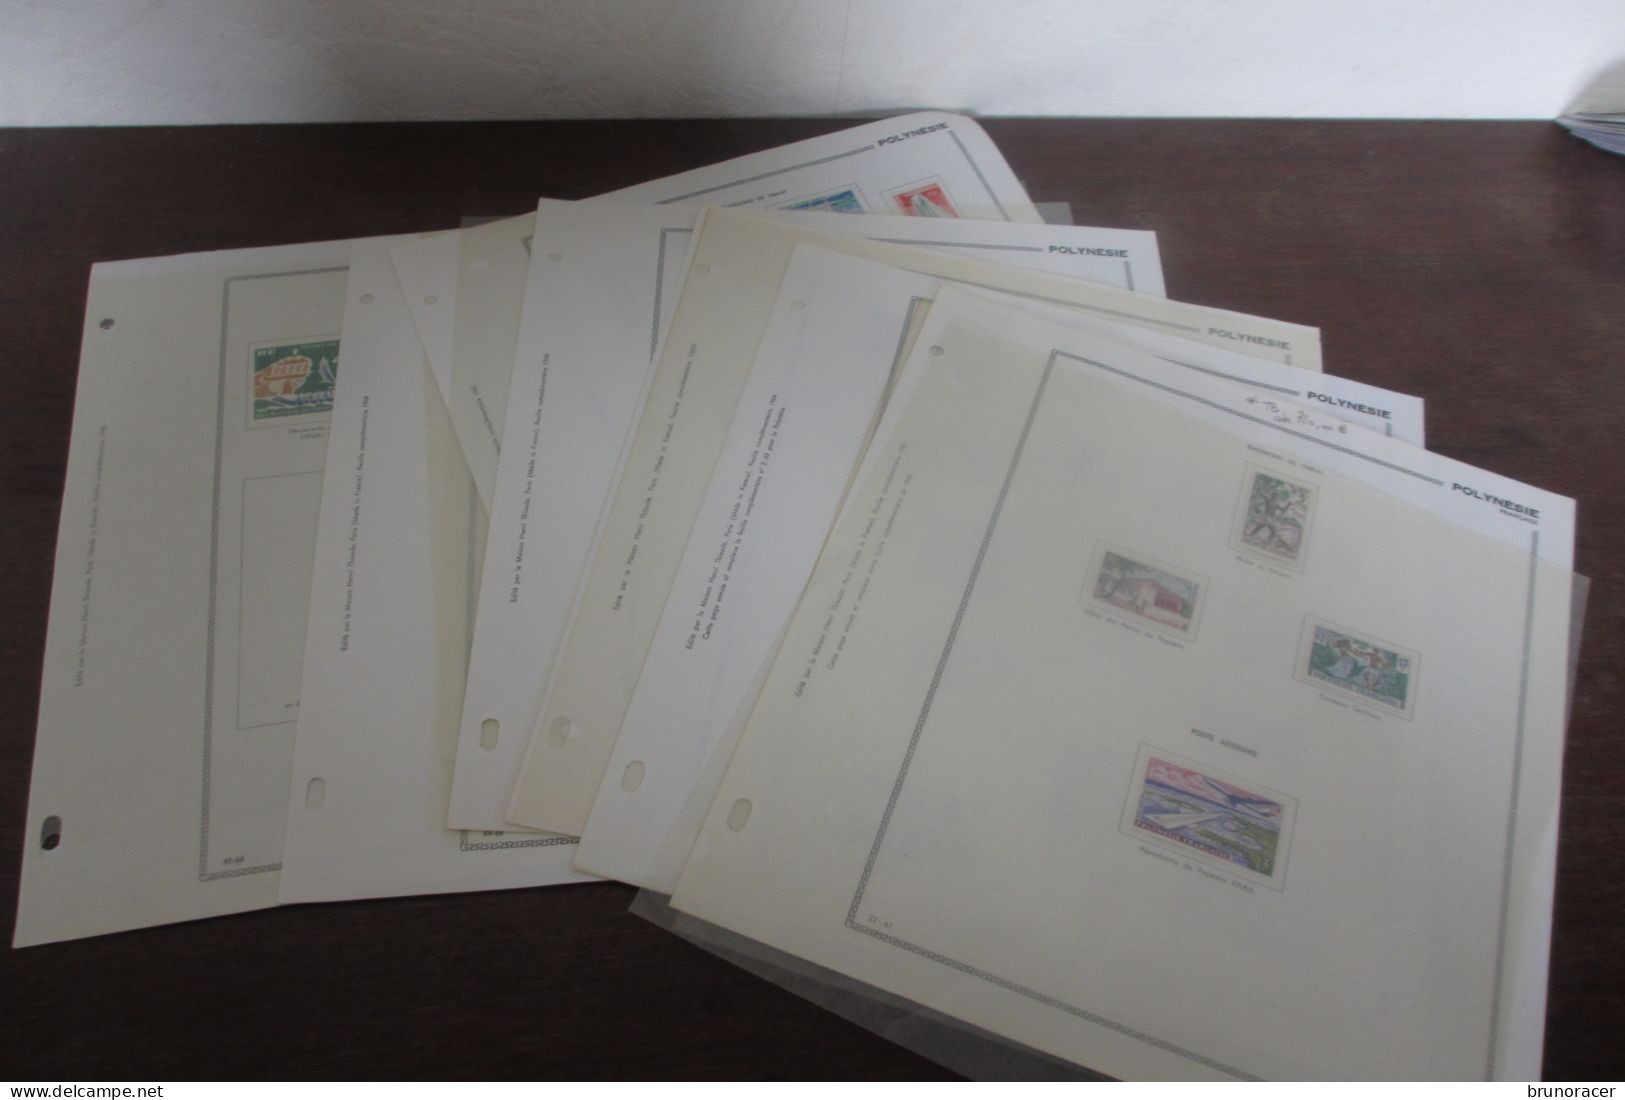 LOT POLYNESIE ANNEES 60 POSTE ET POSTE AERIENNE SUR 7 PAGES D'ALBUM NEUF* COTE 880 EUROS  VOIR SCANS - Unused Stamps